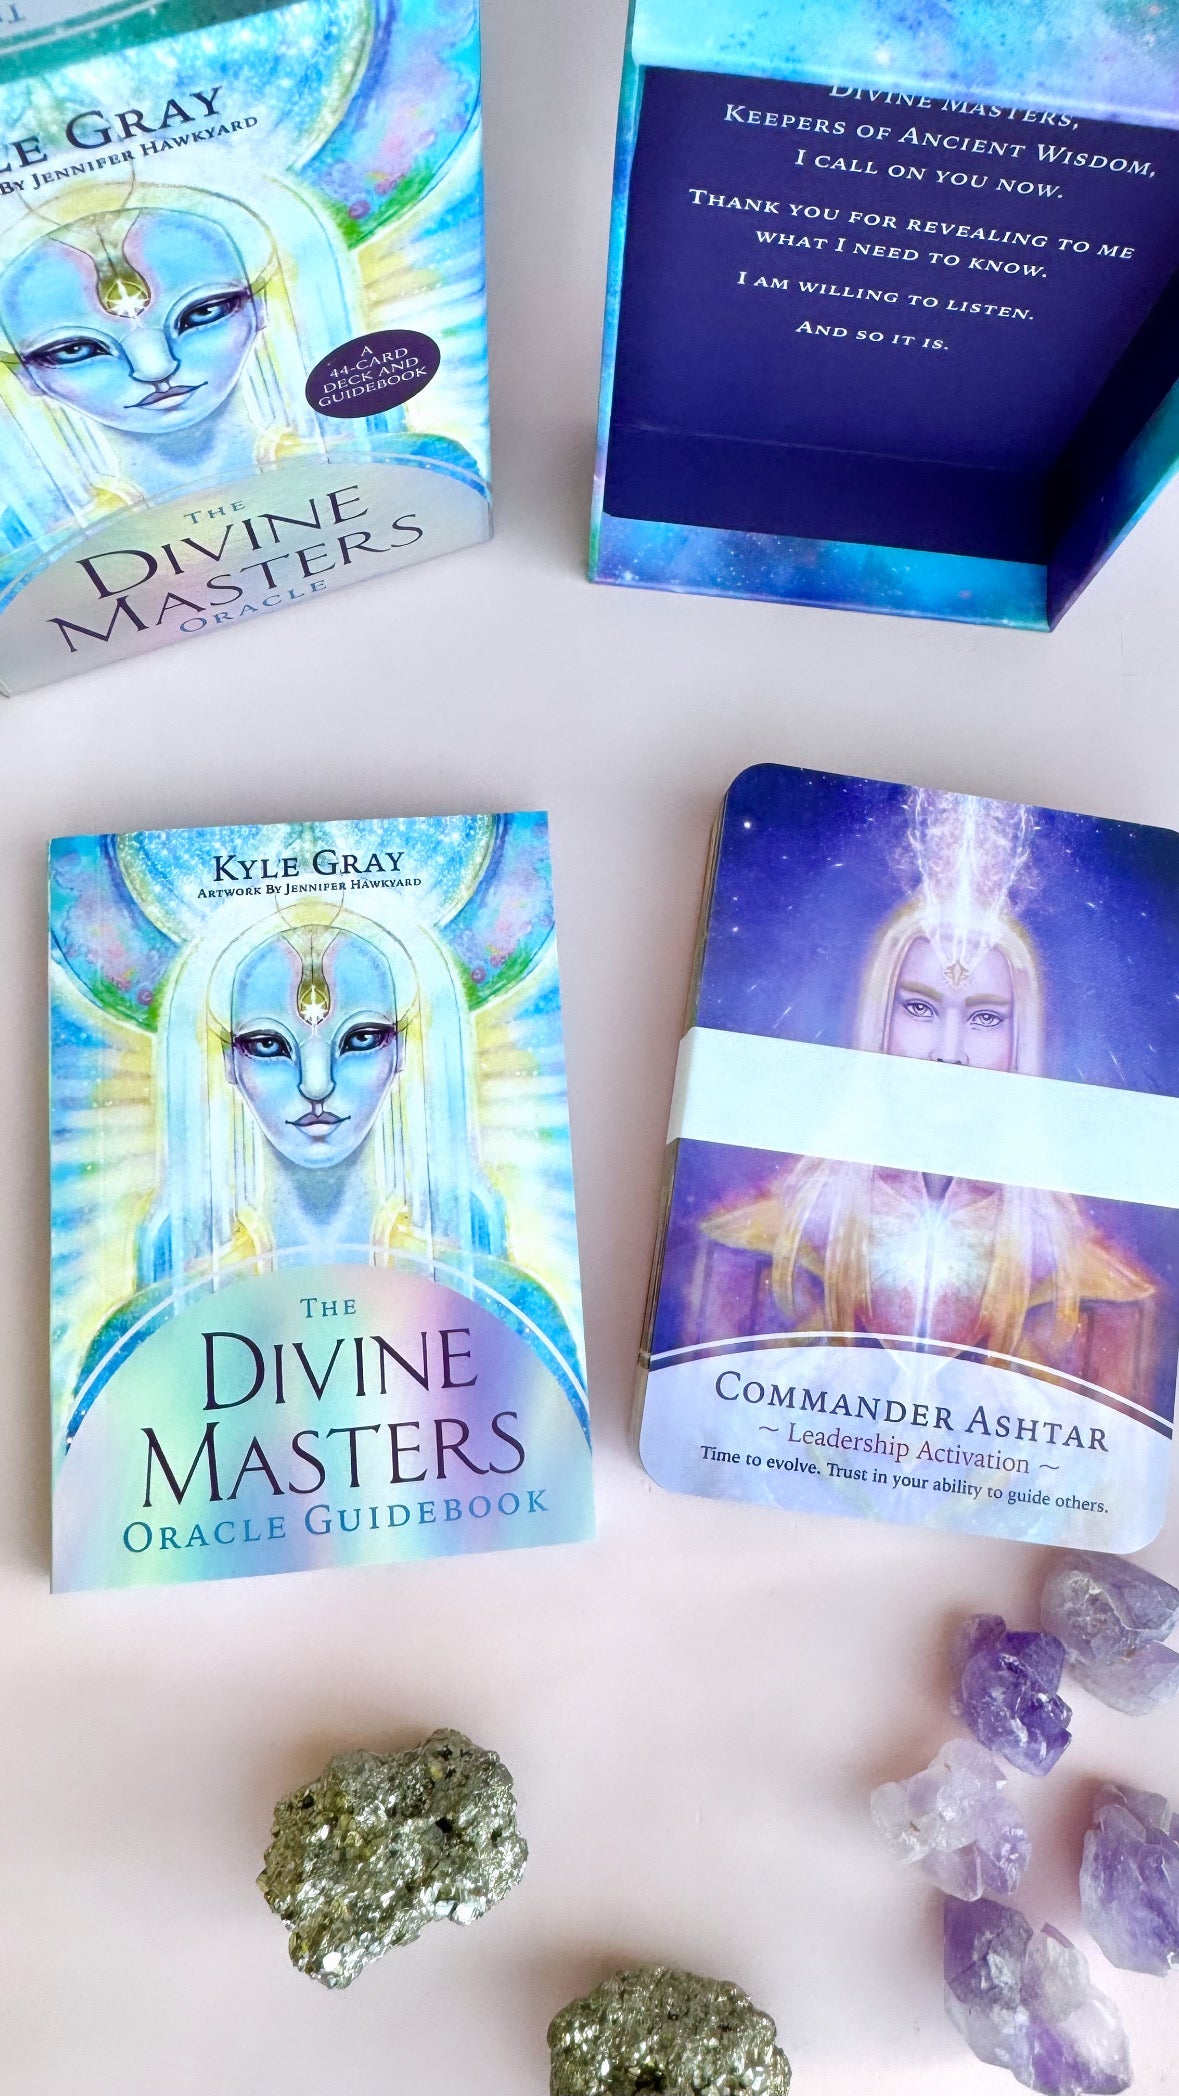 Månesøster Krystaller Divine Masters Oracle - OrakelKort & guidebog af Kyle Gray